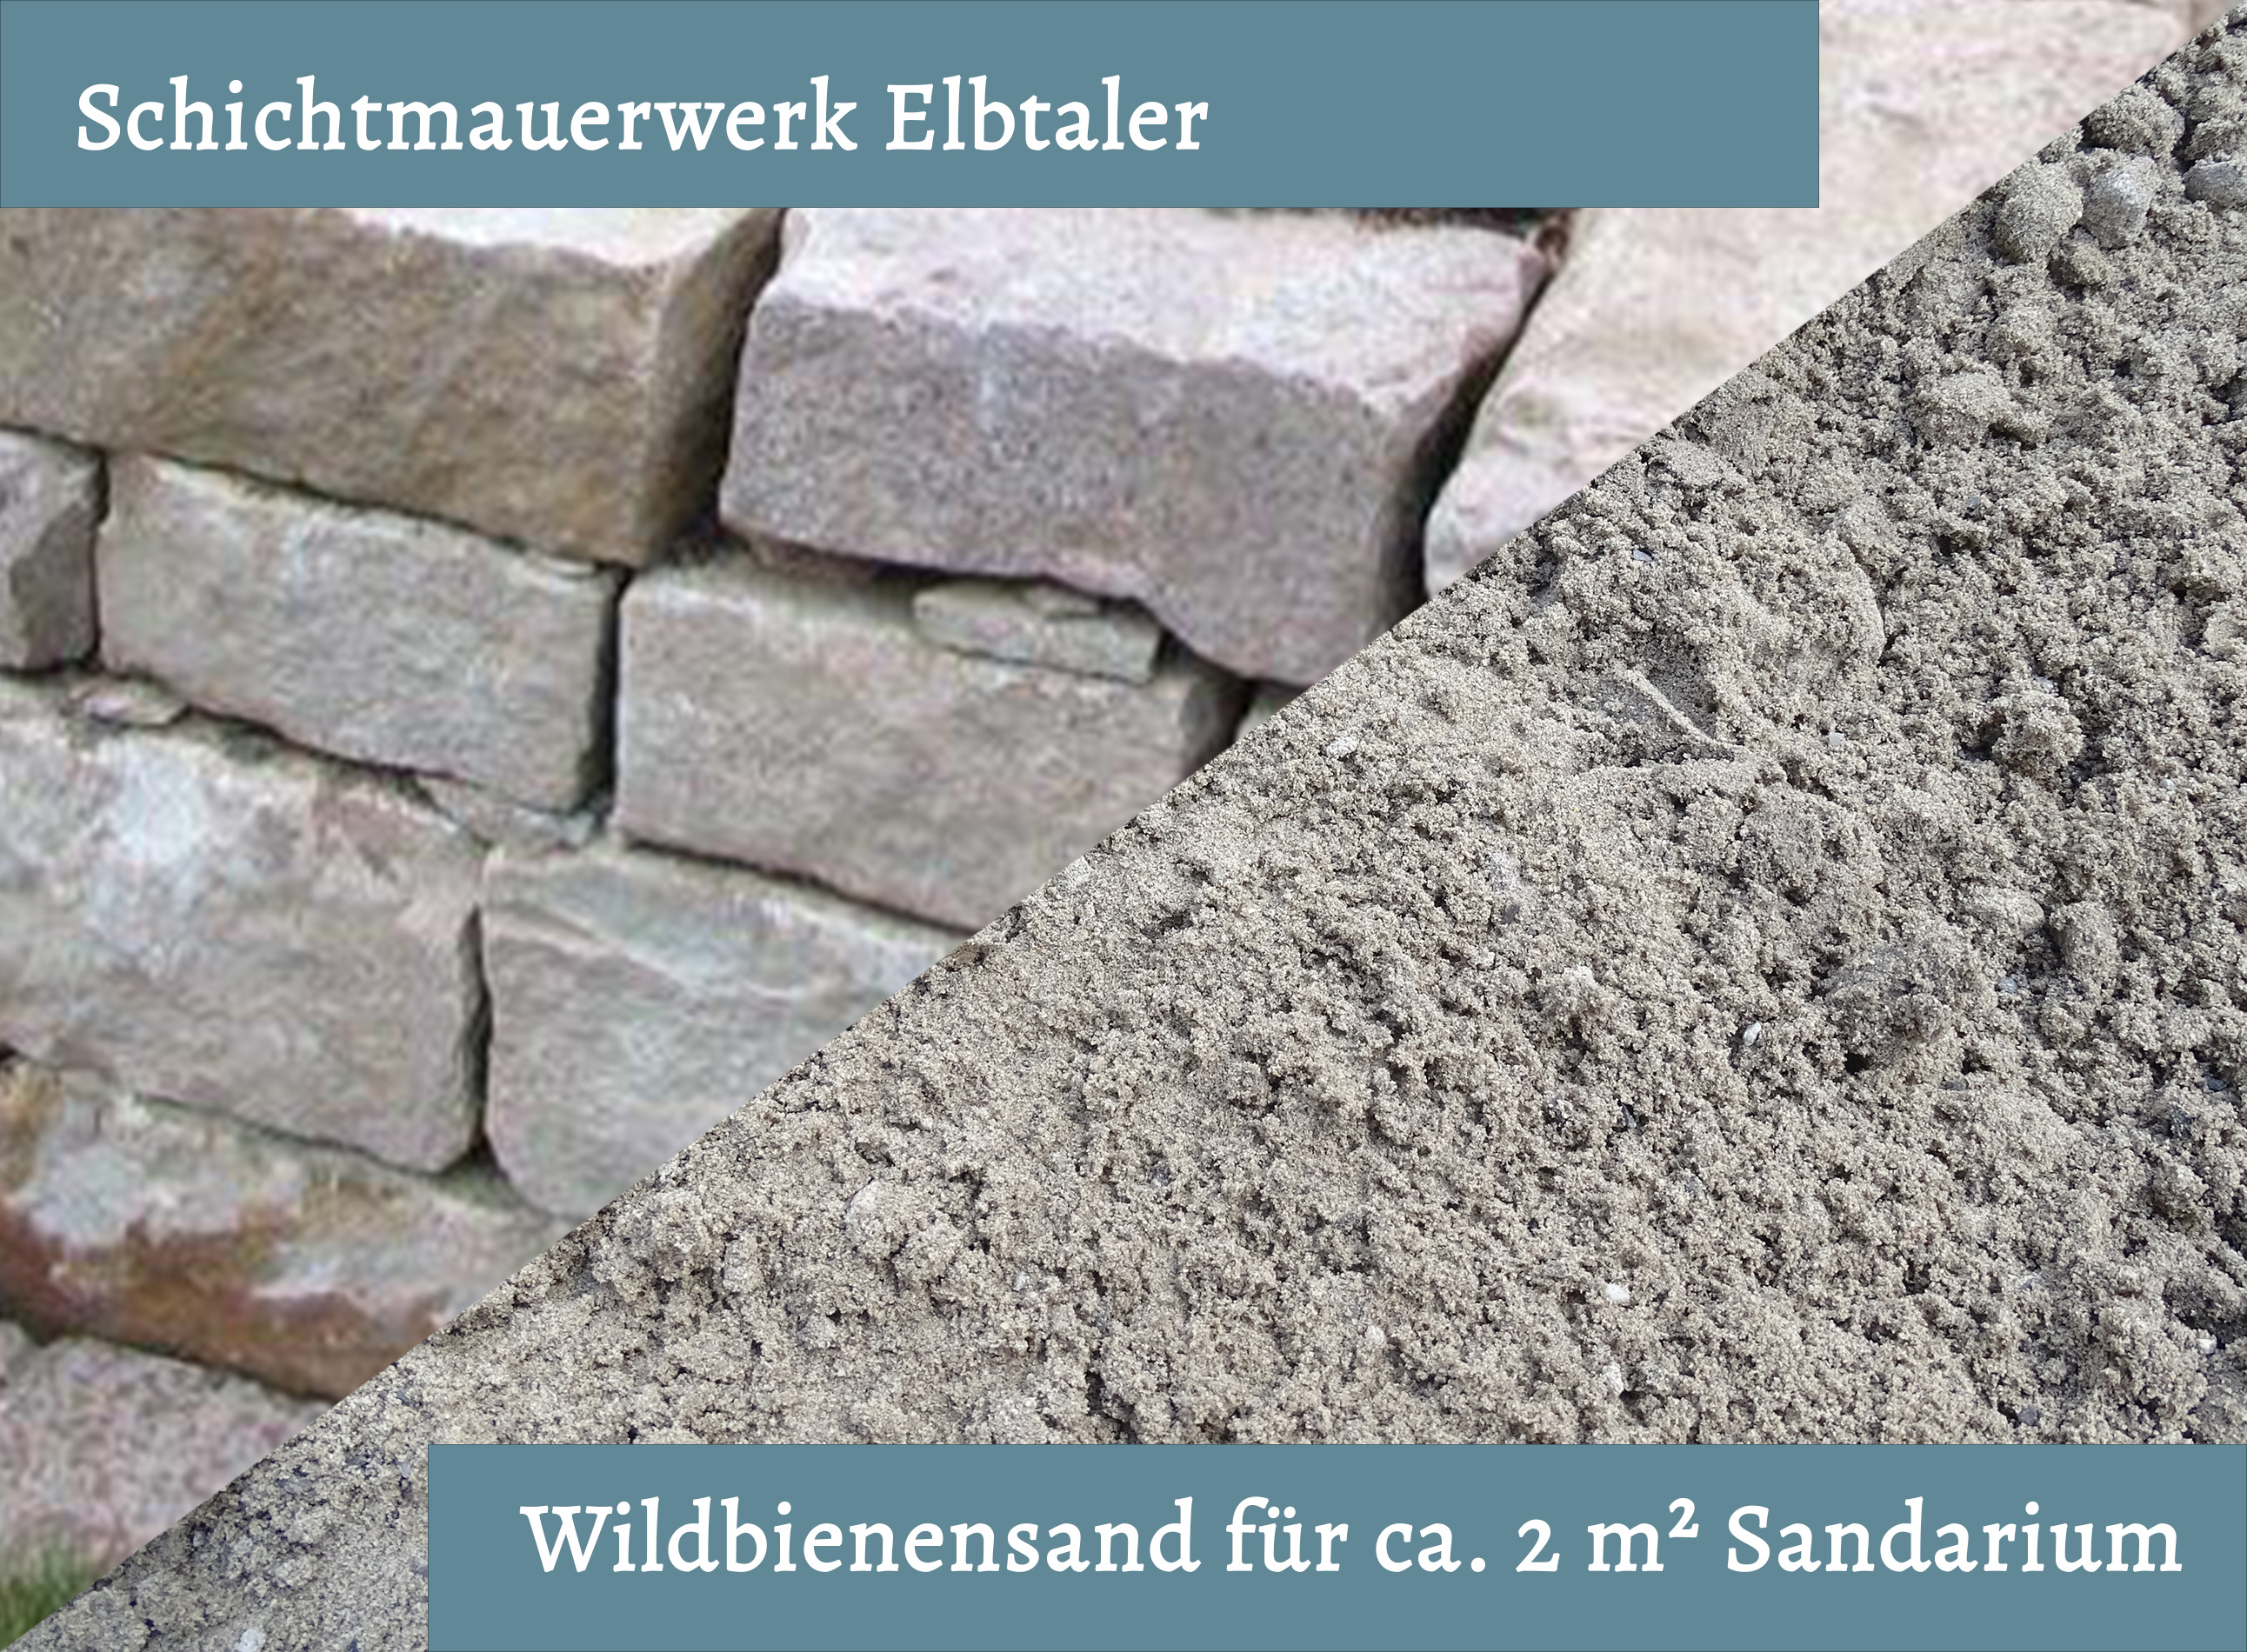 Wildbienensand mit Schichtmauer Elbtaler für Sandarium 2,0 m²